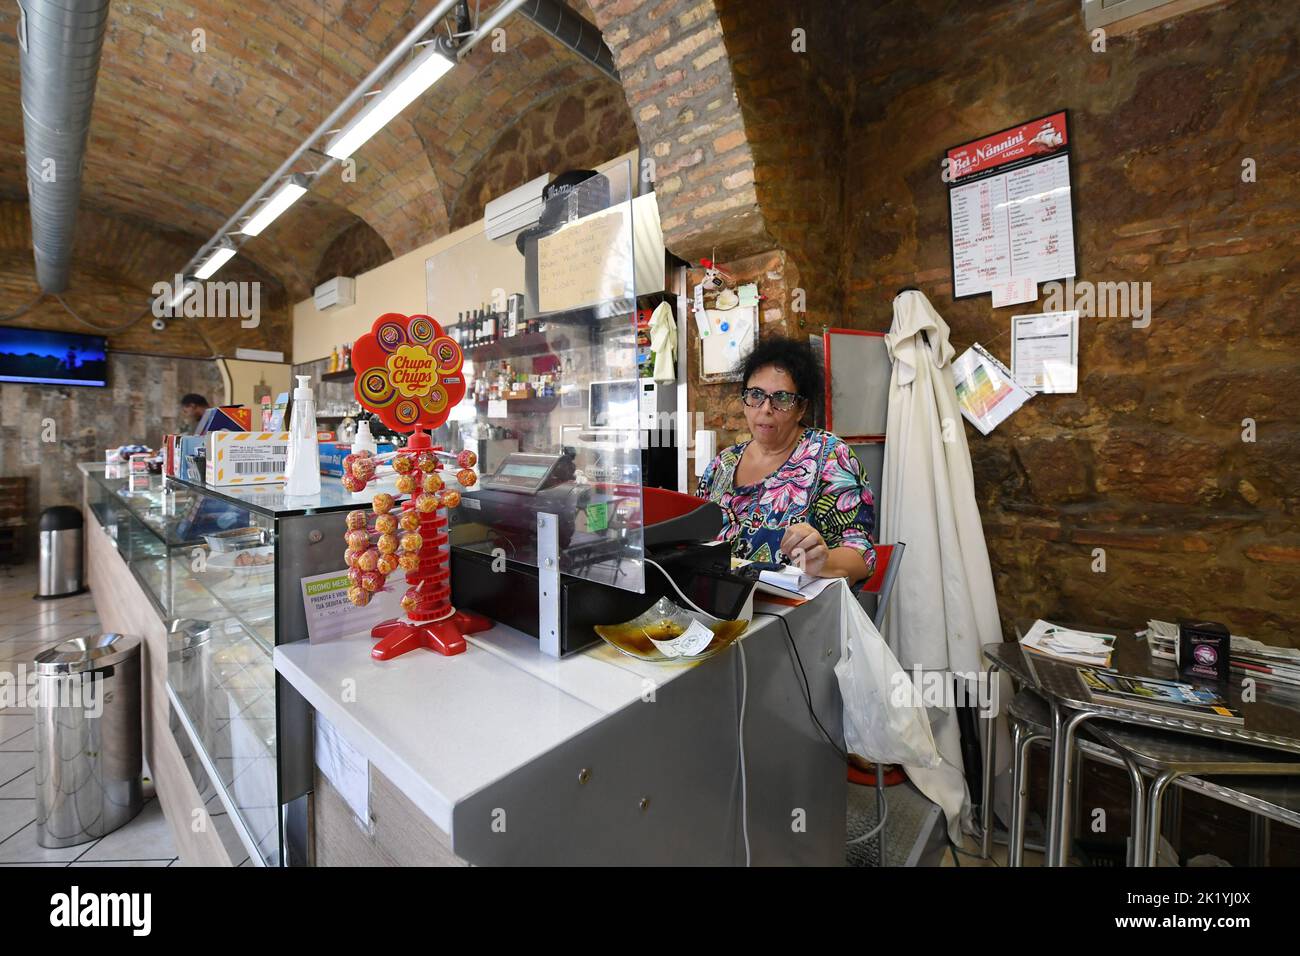 (220921) -- ROMA, 21 settembre 2022 (Xinhua) -- Laura Ramoni lavora al bar Big Mamy di Roma, 17 settembre 2022. Al bar Big Mamy di Roma, un manichino gonfiabile appeso alla finestra portava un cartello giallo con la scritta "The Bill has arrived" (il conto è arrivato). Laura Ramoni, proprietaria del bar, ha detto a Xinhua che la bolletta elettrica del bar a giugno e luglio era di circa 2.600 euro, che quasi triplicavano rispetto allo stesso periodo dell'anno scorso. "Non possiamo pagare il conto", ha detto. "Devo licenziare due persone che hanno lavorato qui e ho aumentato il prezzo del caffè di 0,1 euro.” 'Mi sentivo impiccato, e non posso prenderlo un Foto Stock